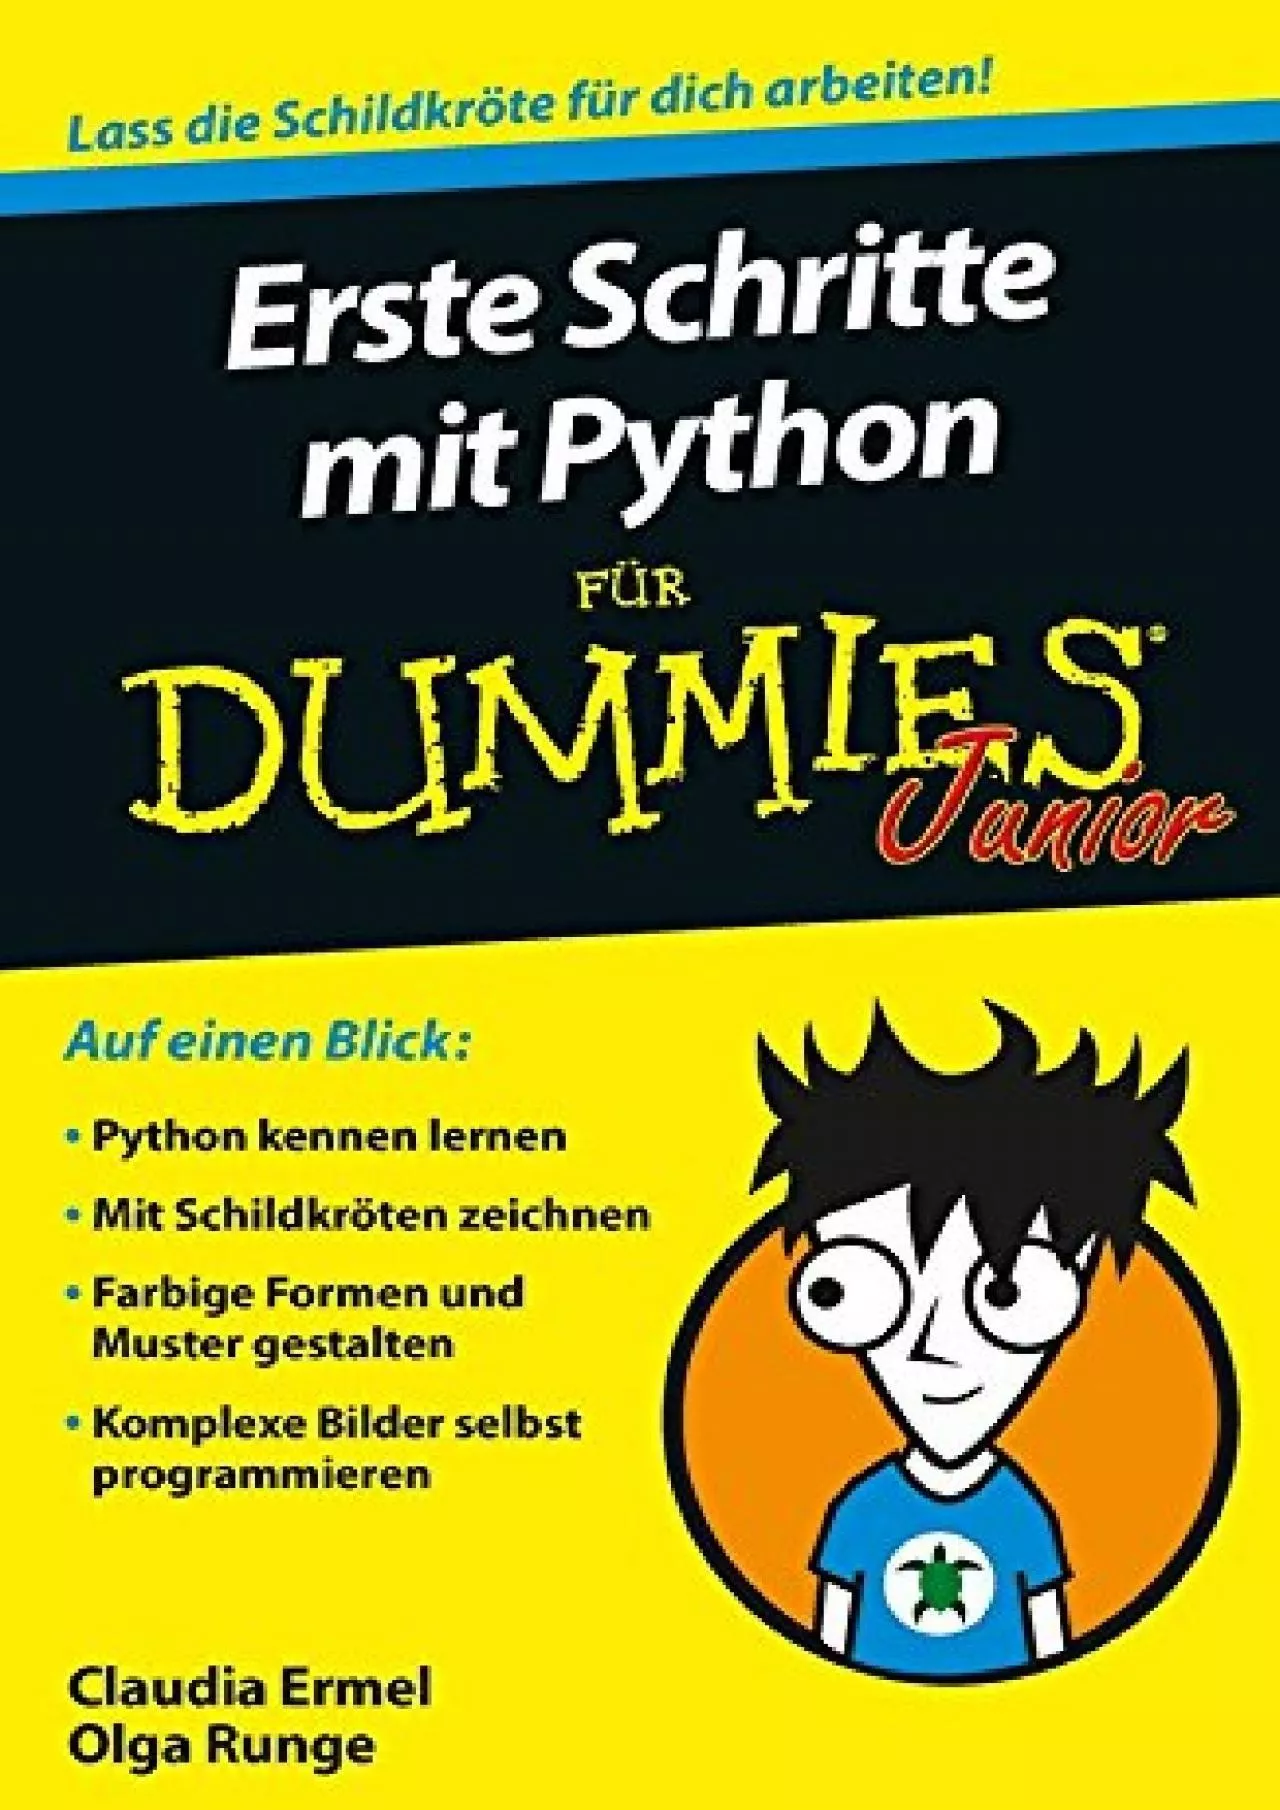 [PDF]-Erste Schritte mit Python für Dummies Junior (Für Dummies) (German Edition)